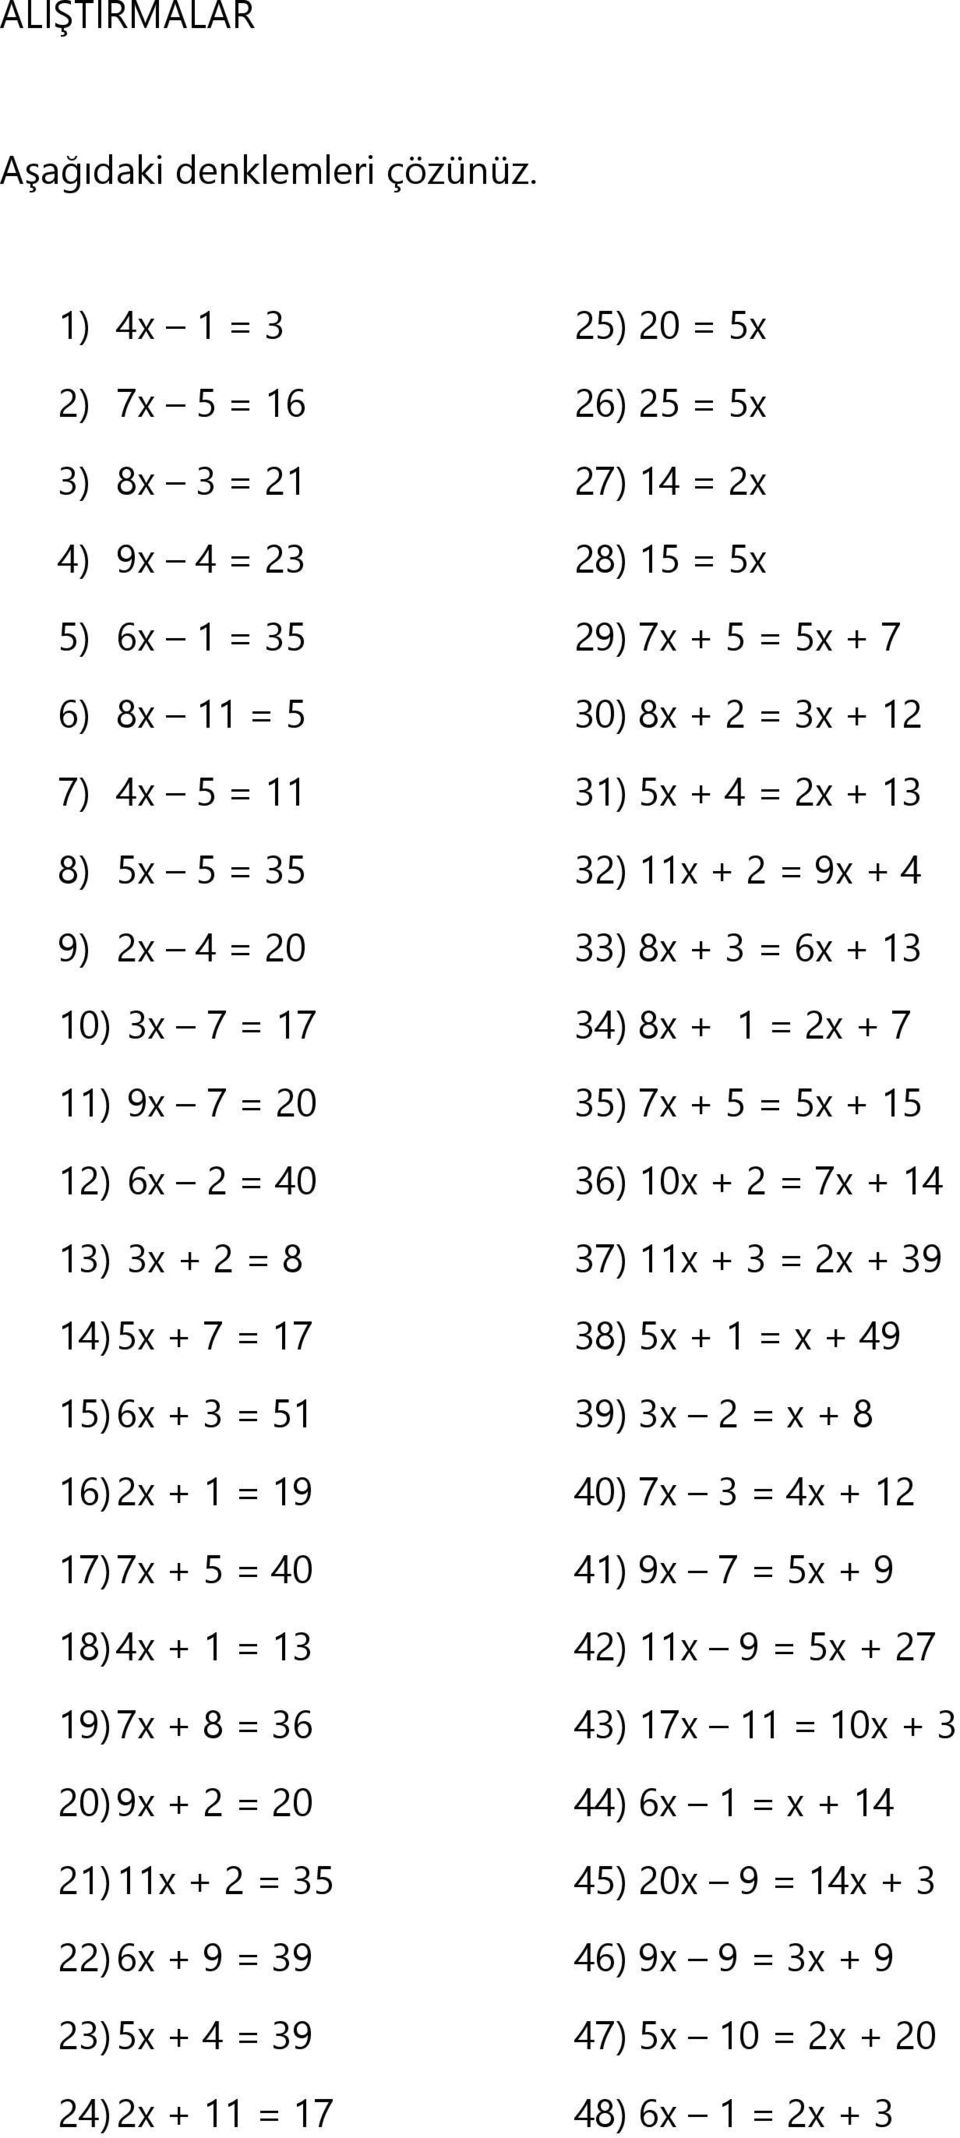 8) 5x 5 = 35 32) 11x + 2 = 9x + 4 9) 2x 4 = 20 33) 8x + 3 = 6x + 13 10) 3x 7 = 17 34) 8x + 1 = 2x + 7 11) 9x 7 = 20 35) 7x + 5 = 5x + 15 12) 6x 2 = 40 36) 10x + 2 = 7x + 14 13) 3x + 2 = 8 37) 11x + 3